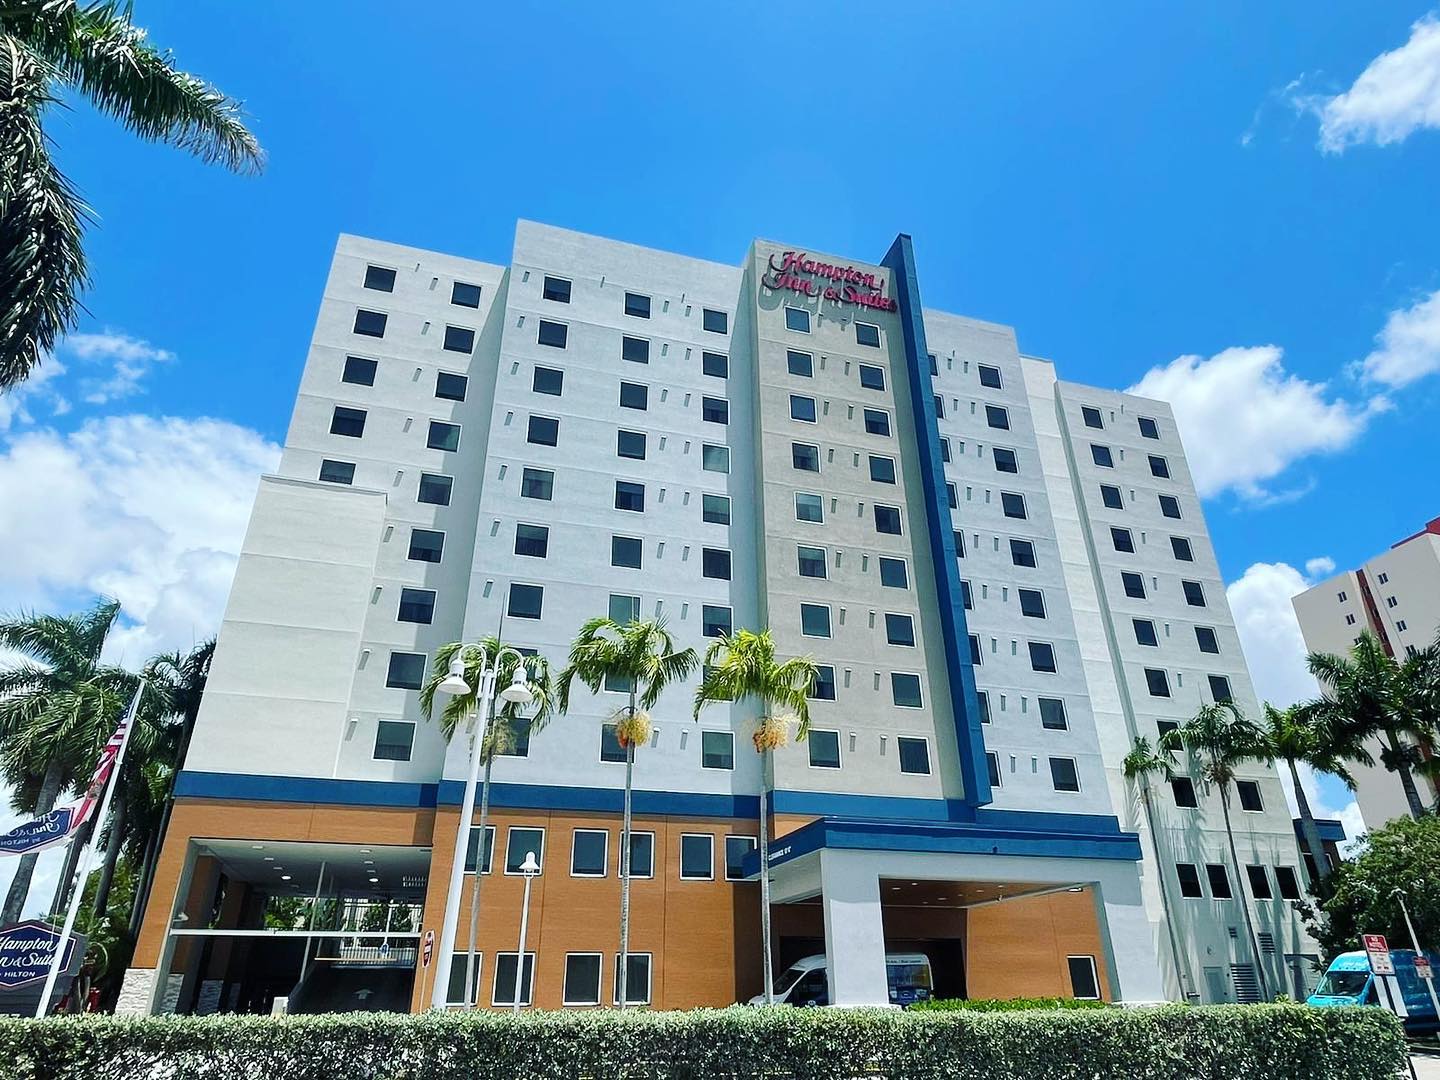 Hampton Inn & Suites Miami Airport South/Blue Lagoon, Miami